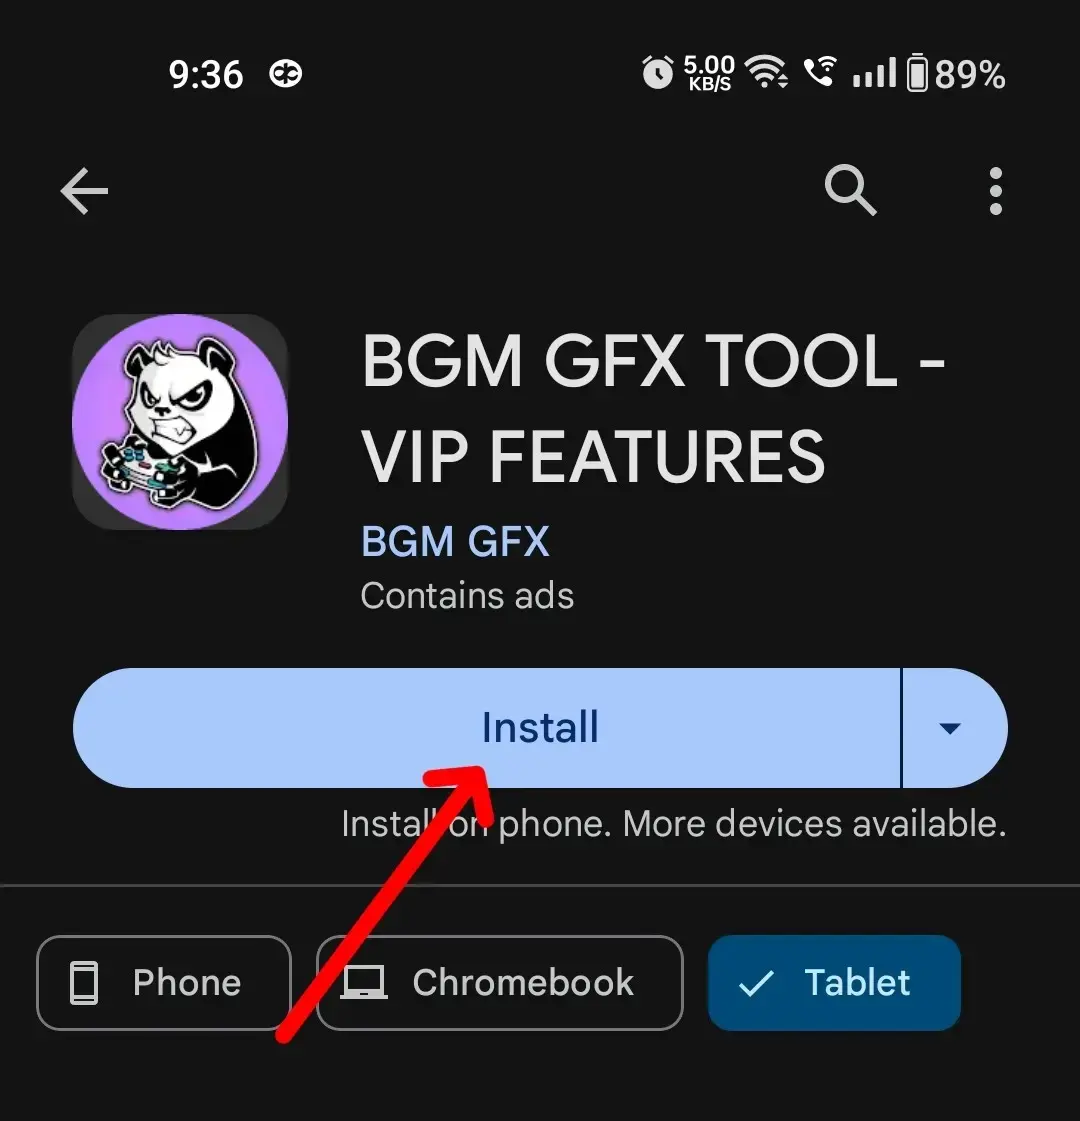 BGM GFx Tool